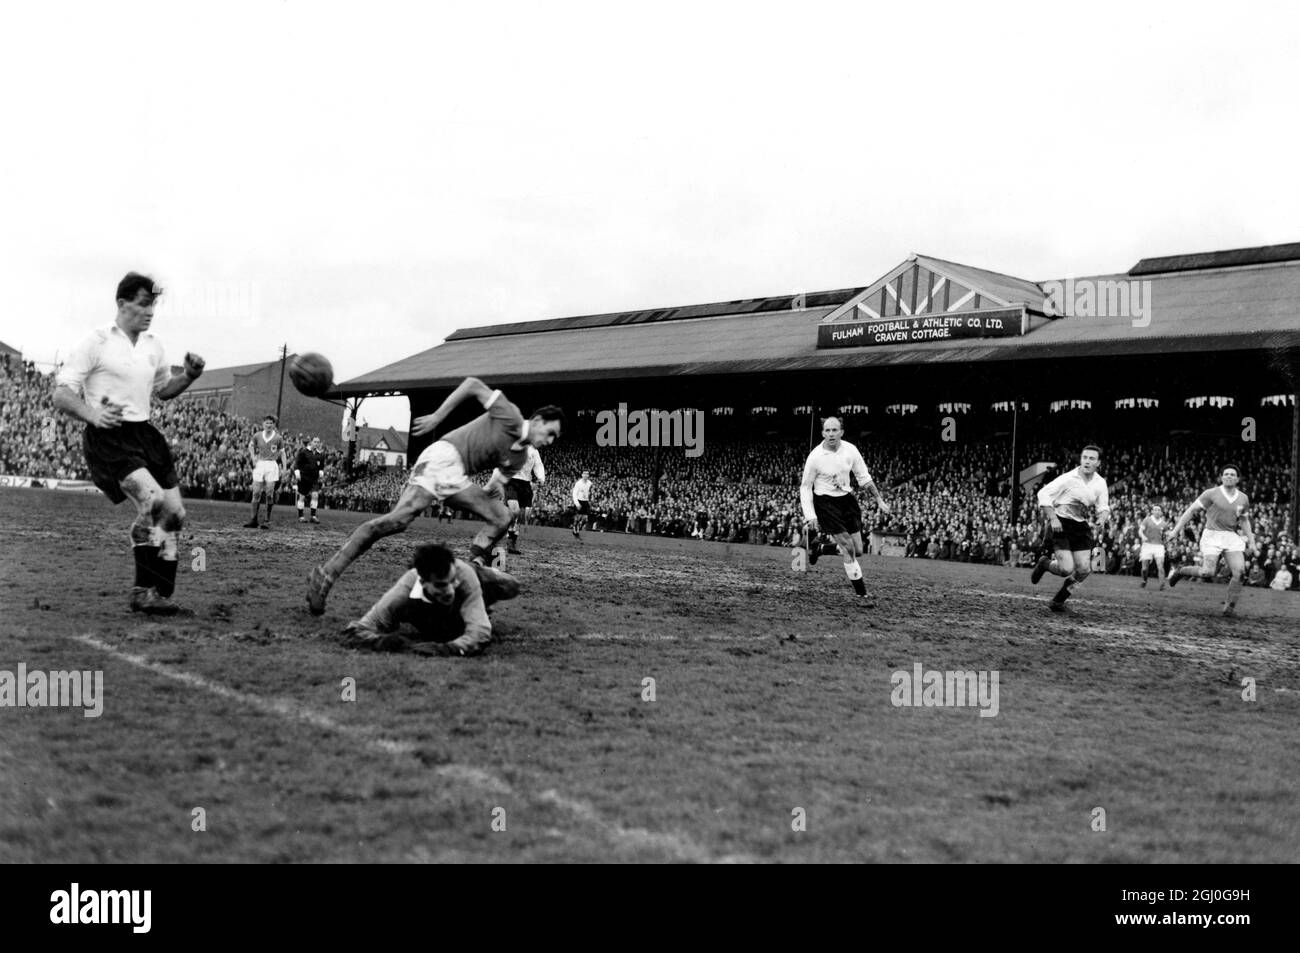 Fulham v Blackpool Charnley, le centre-avant de Blackpool, saute au-dessus du gardien de but de Fulham tombé, Macedo, tandis que le ballon navigue dans l'autre direction à Craven Cottage. 25 février 1961 Banque D'Images